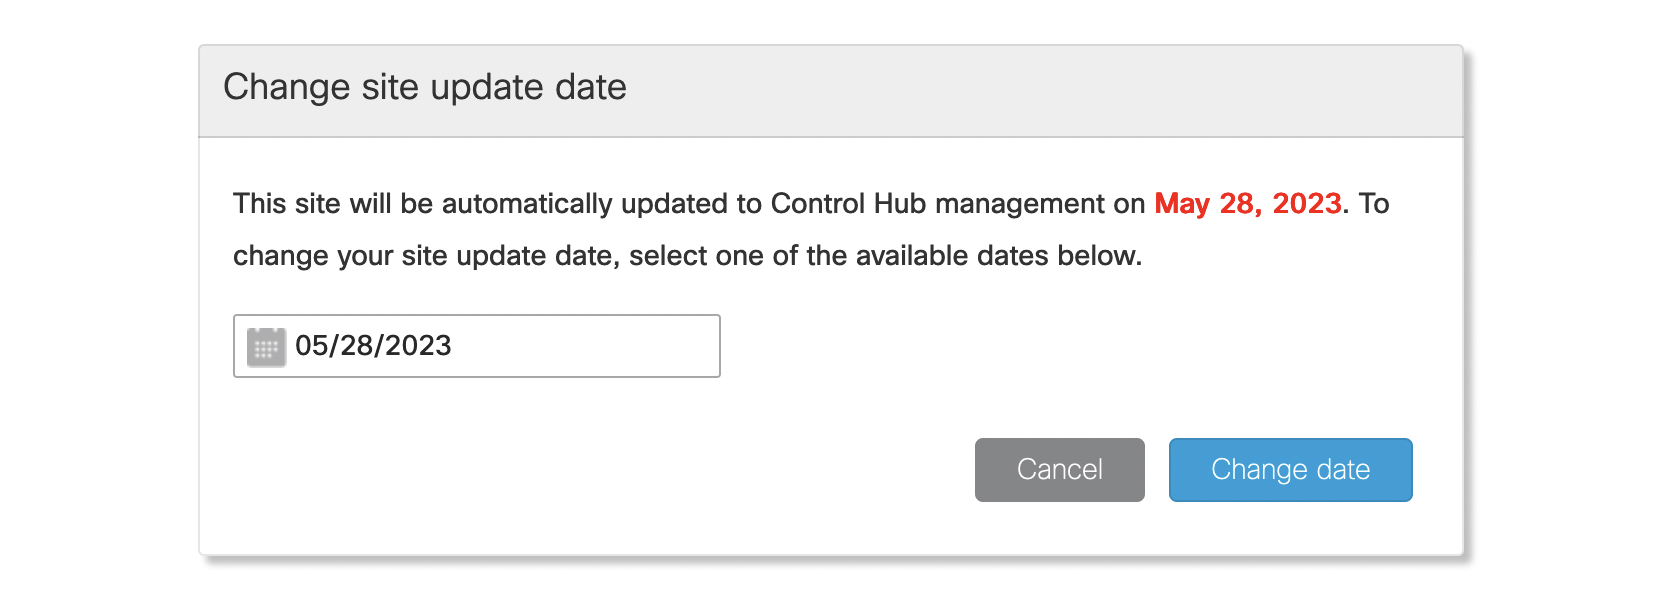 Ventana para cambiar la fecha de actualización automática del sitio en el Administrador del sitio.